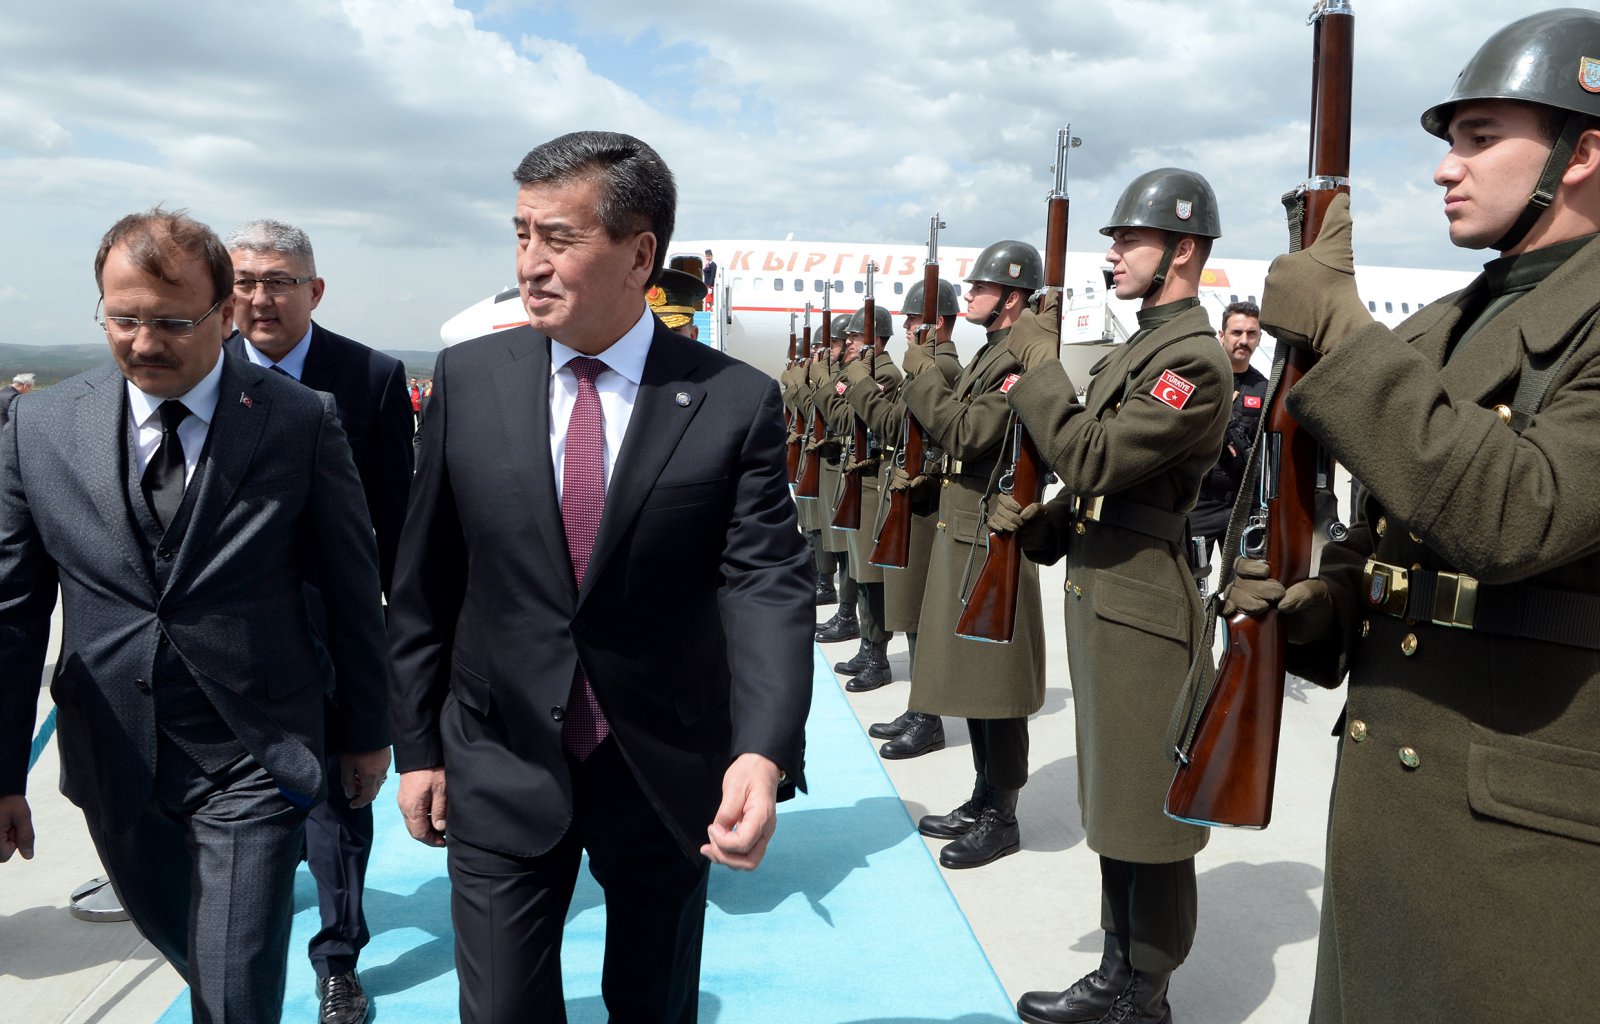 Қырғыз Республикасының Президенті Сооронбай Жээнбеков ресми сапармен Түркияға барды